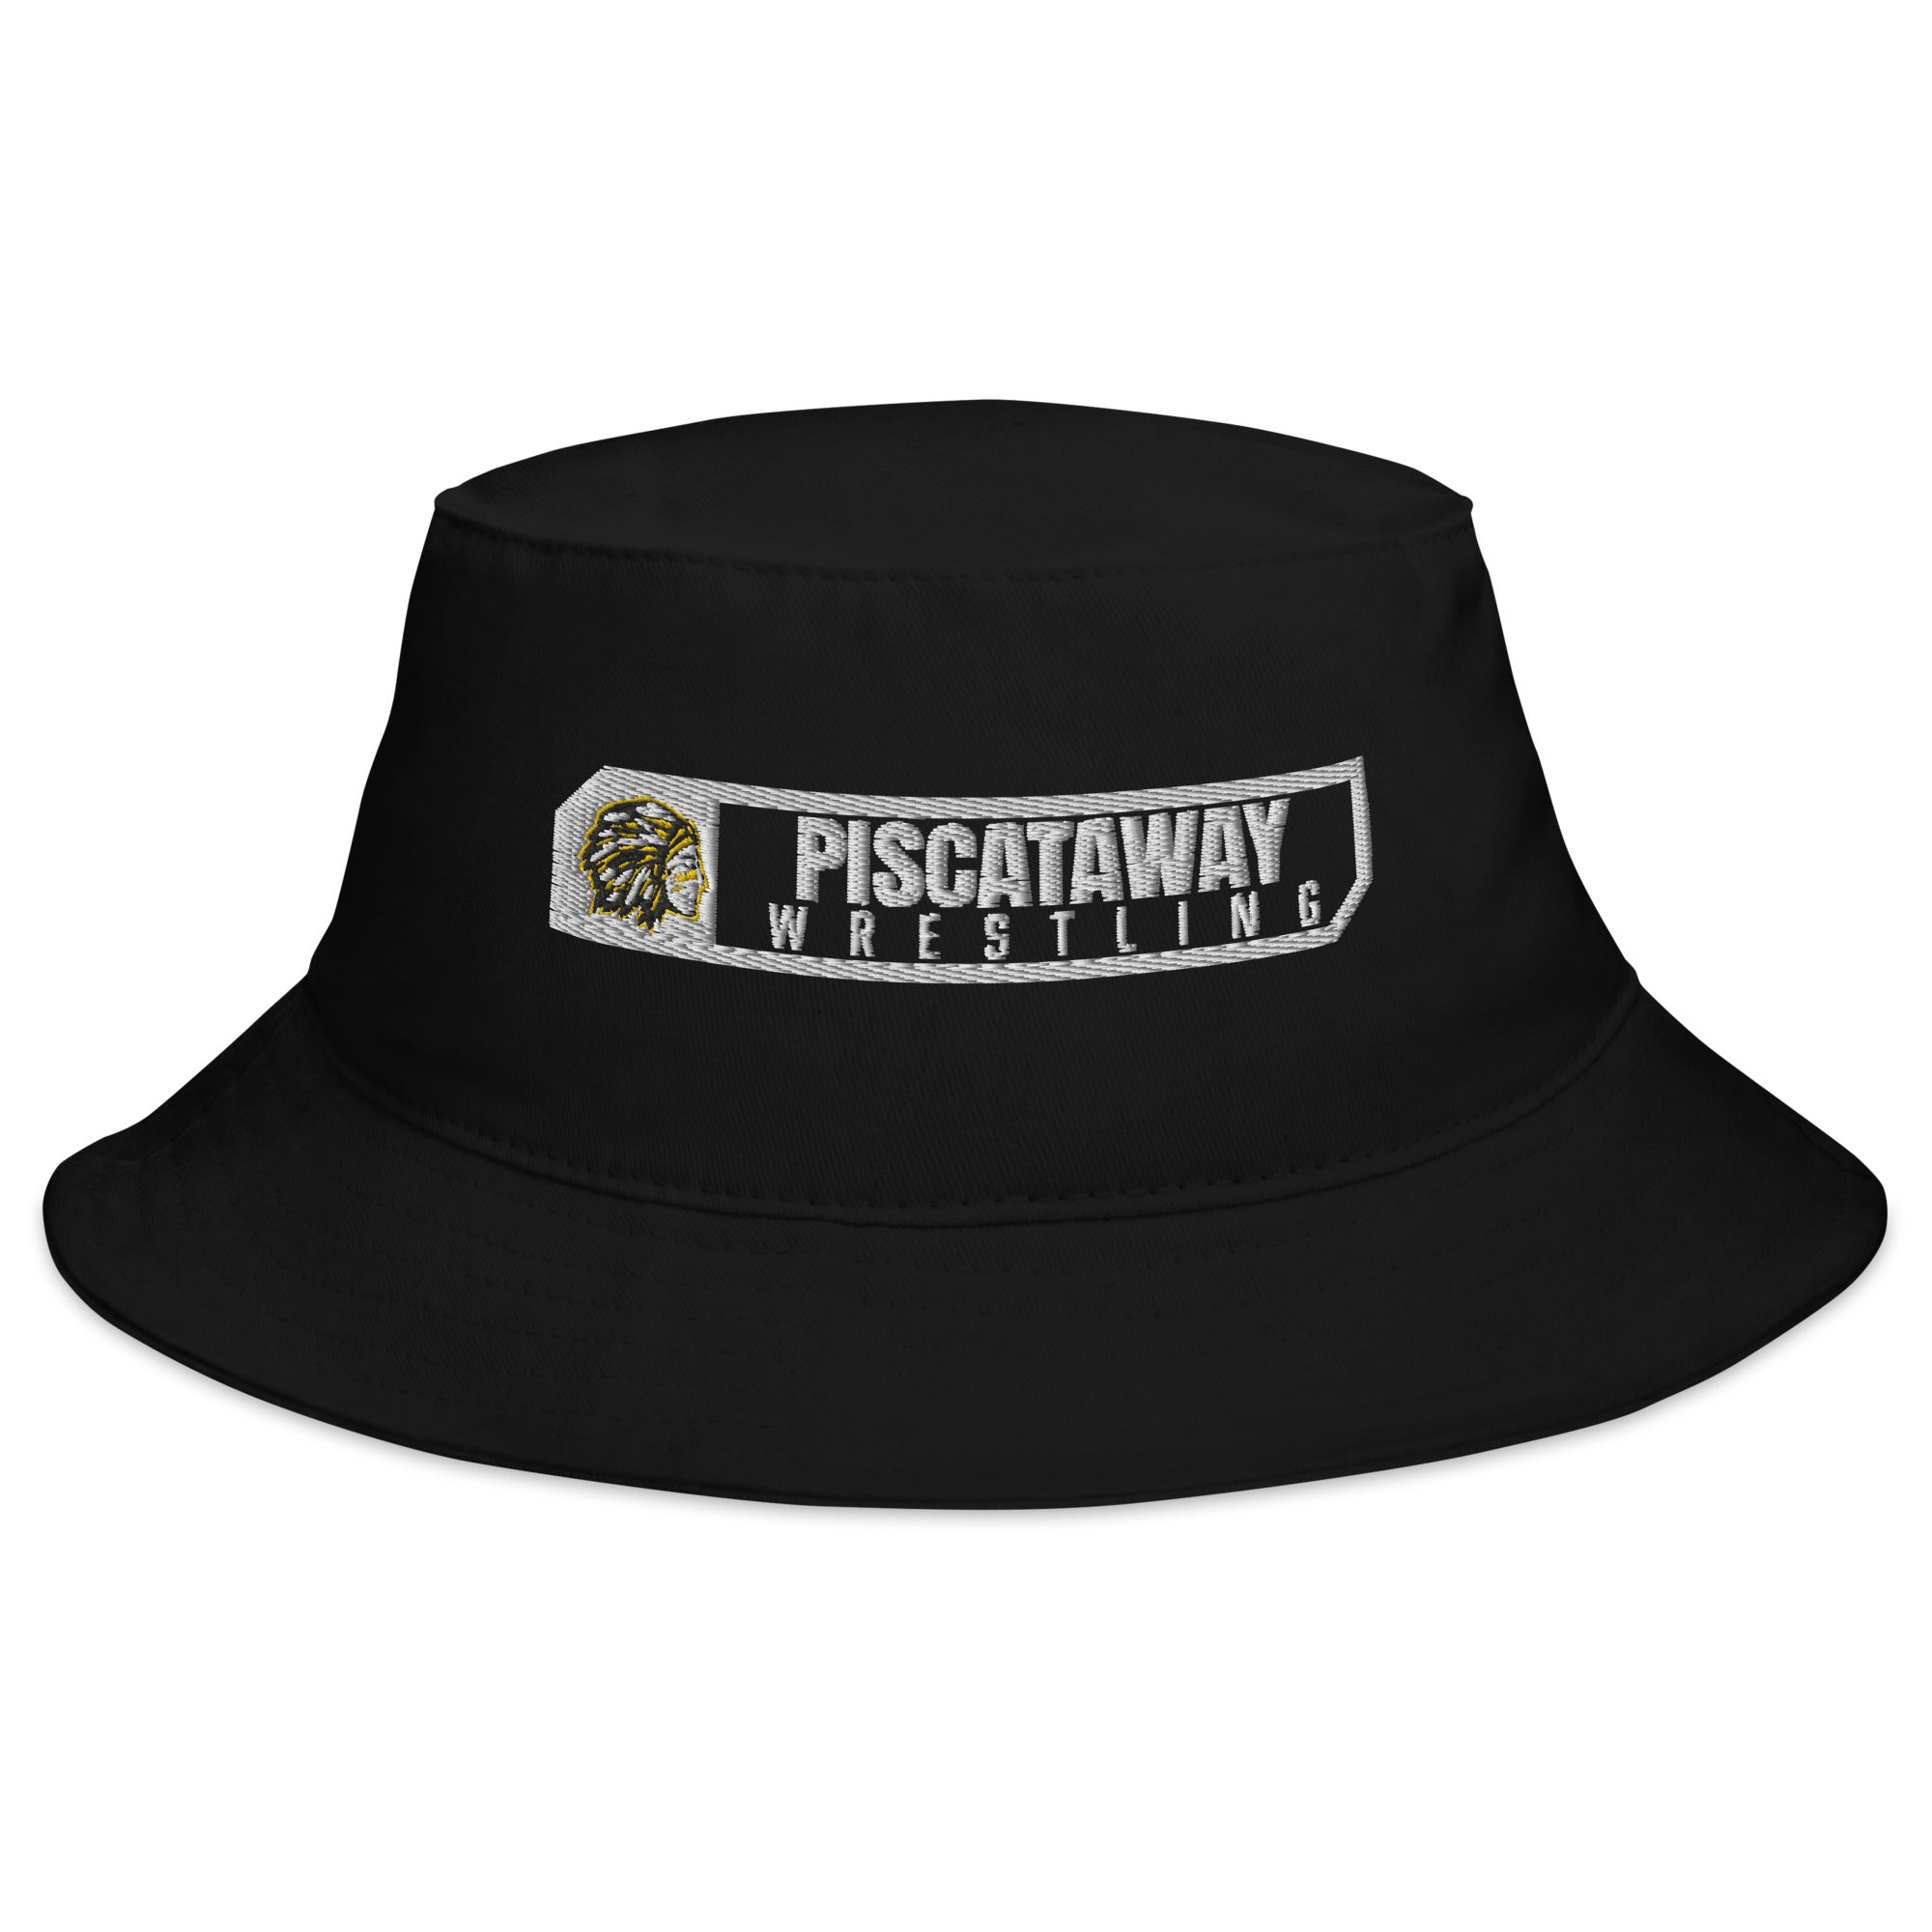 Piscataway Wrestling Bucket Hat